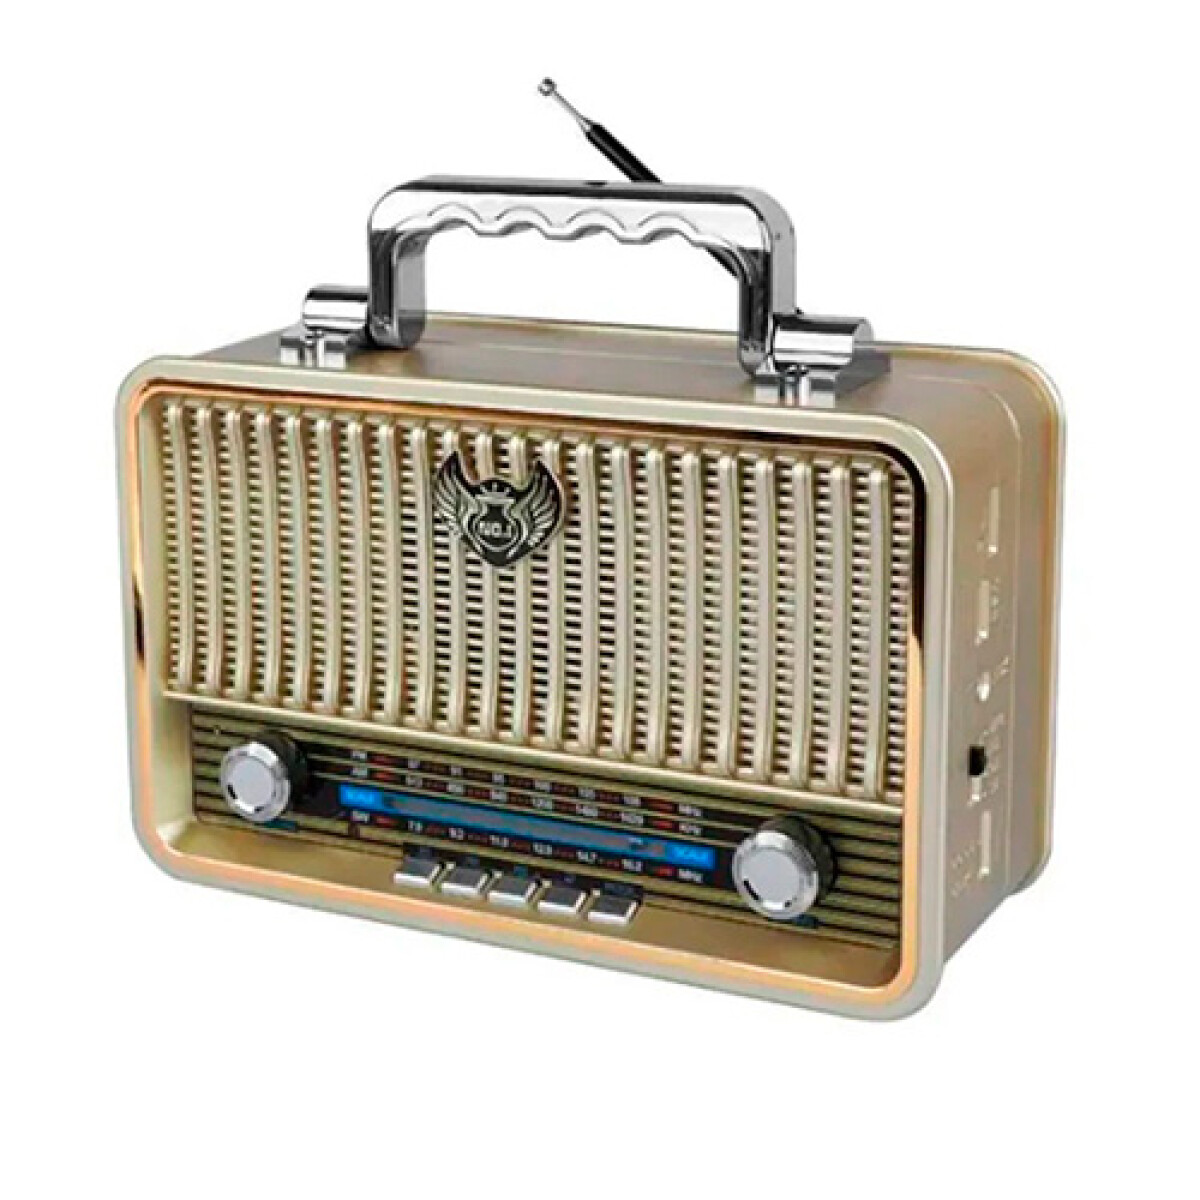 Kolm  Radio AM/FM, International, Mod N-1201AC, A Pilas/220 Volt